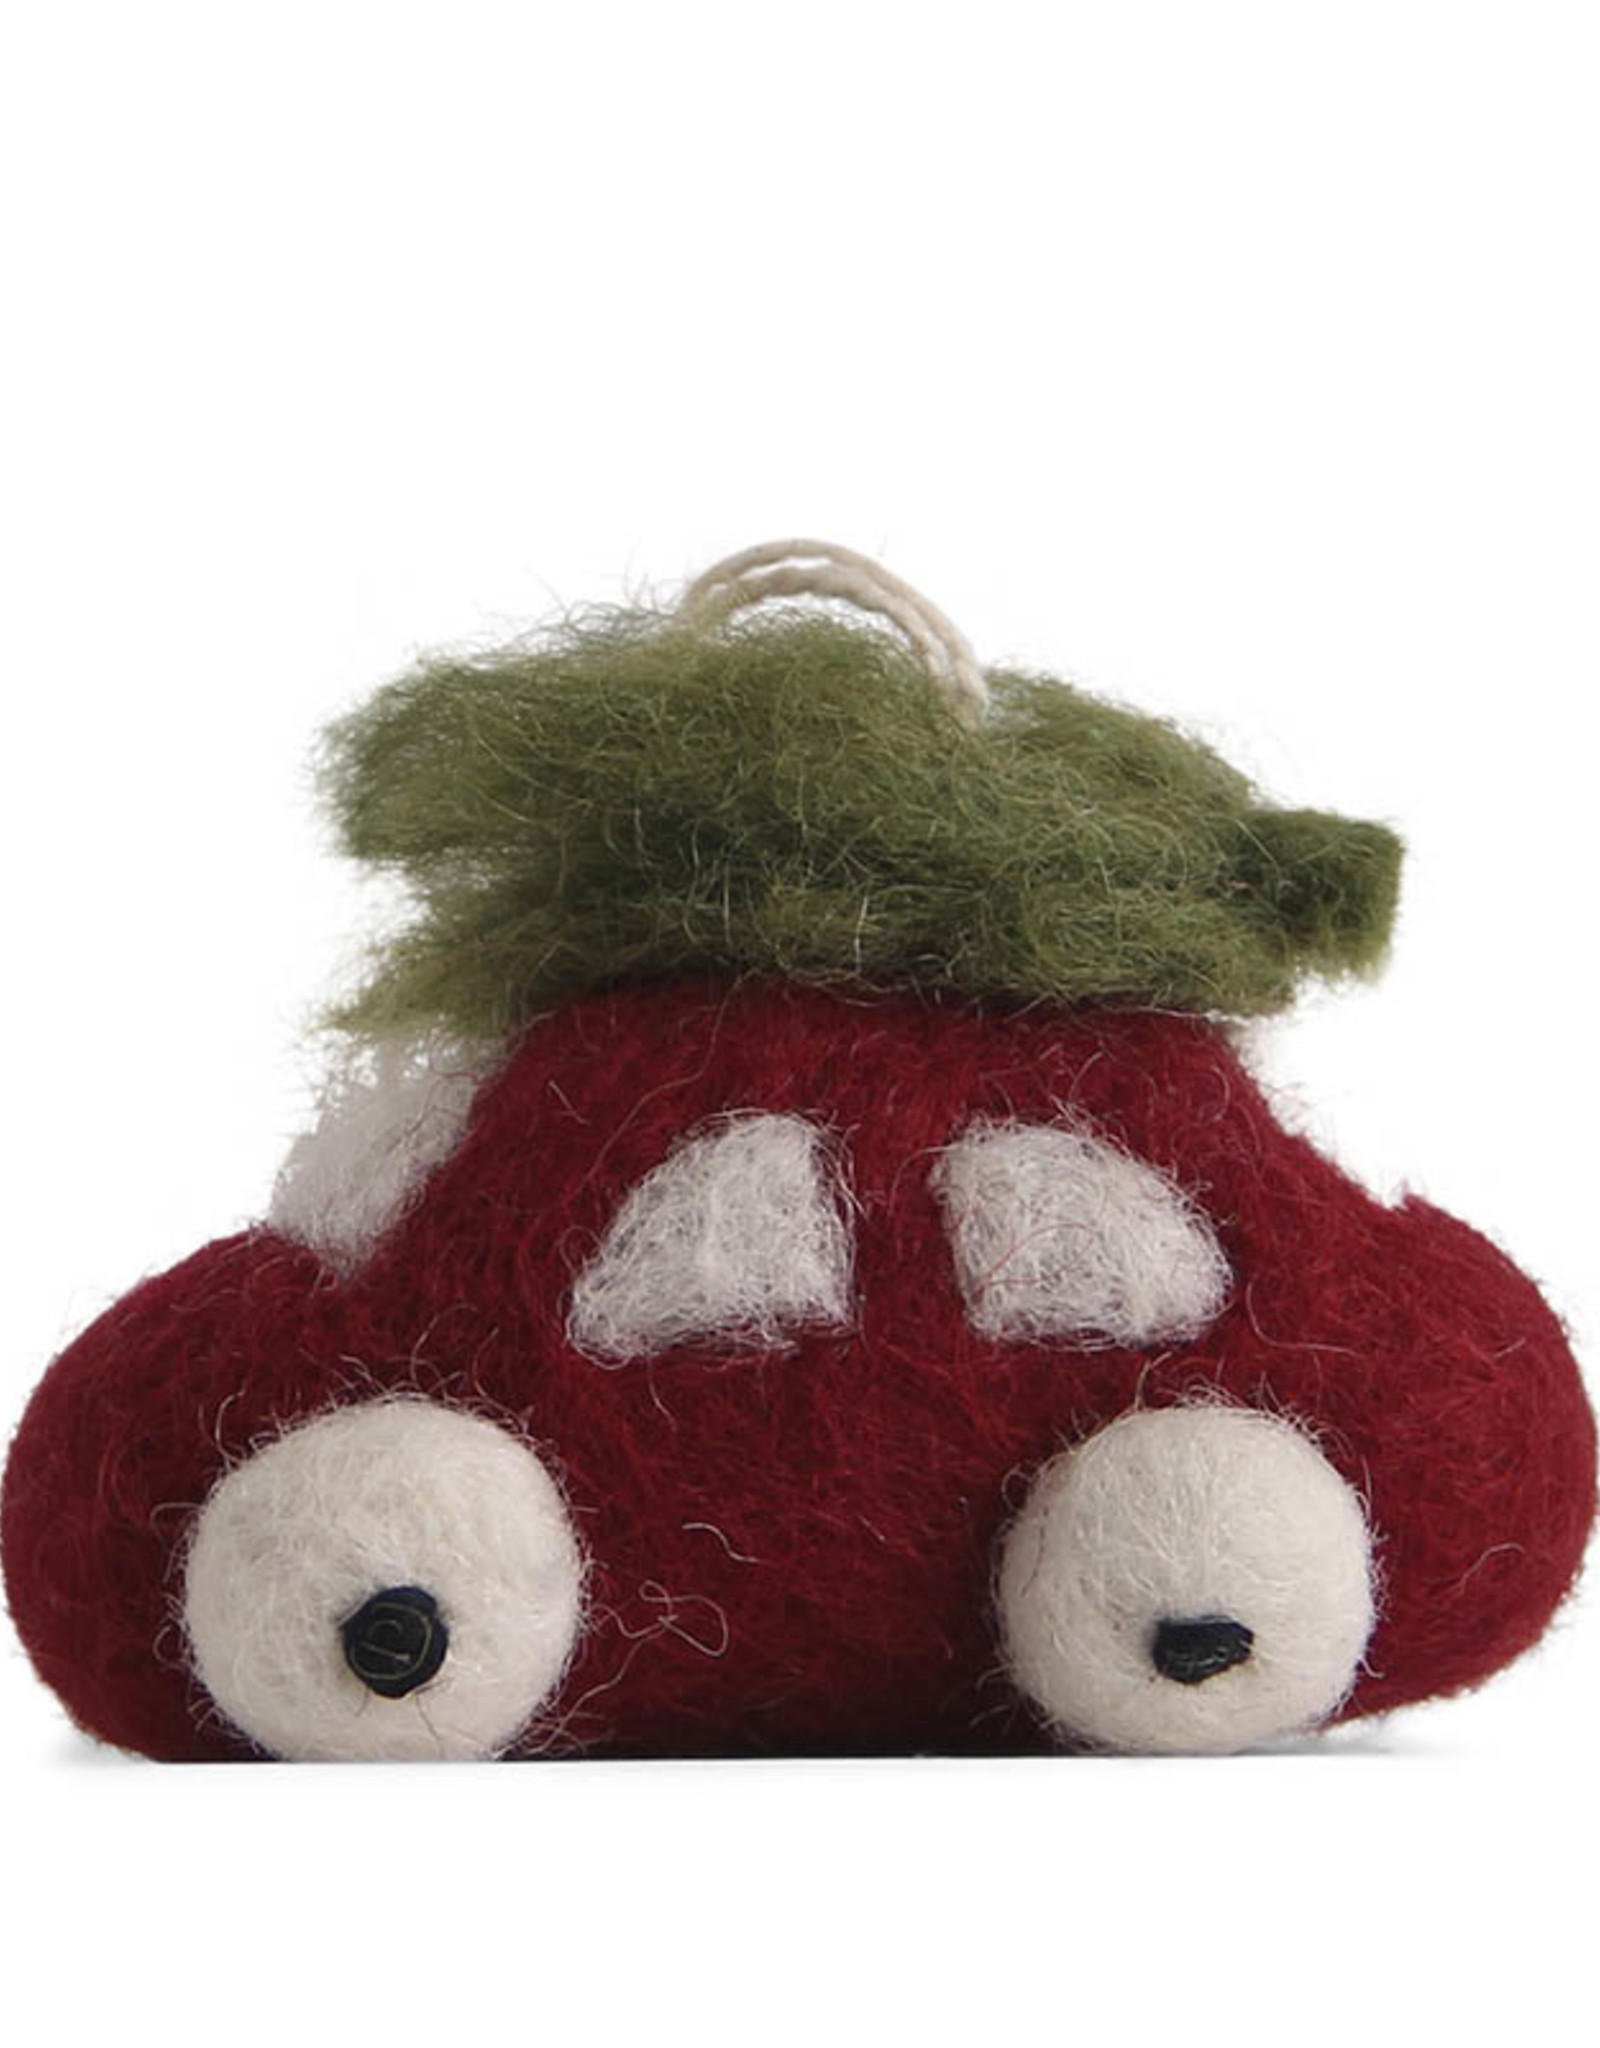 EGS EGS Fair Trade - Red Car Ornament